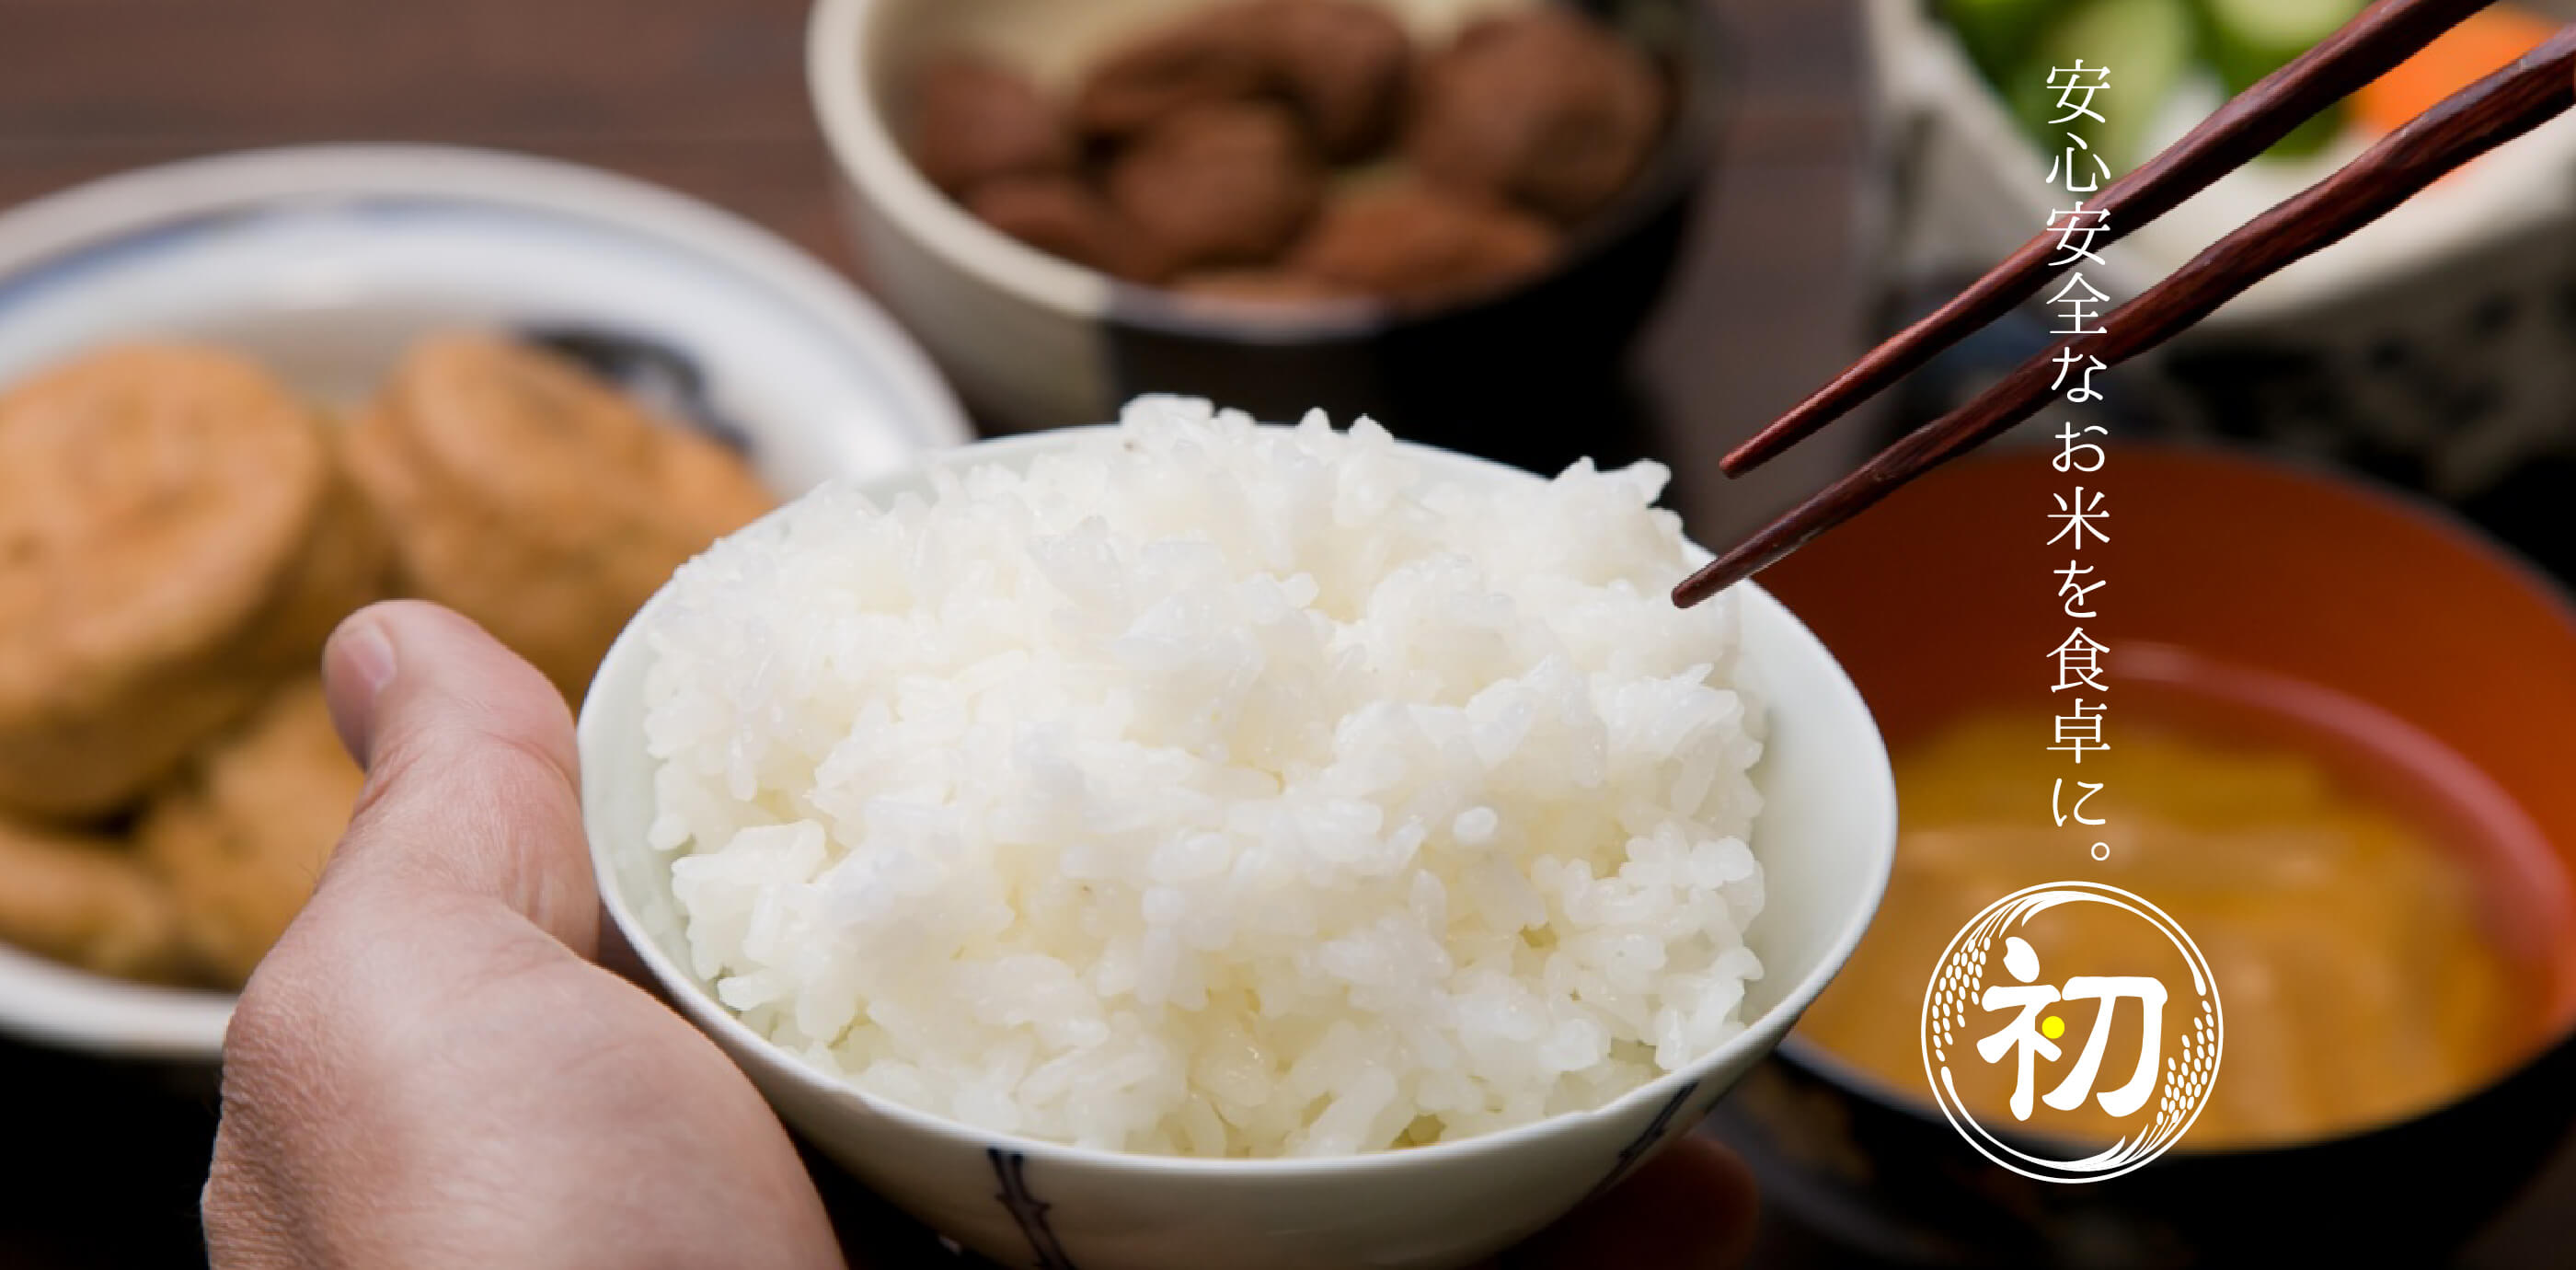 安心安全なお米を食卓に。